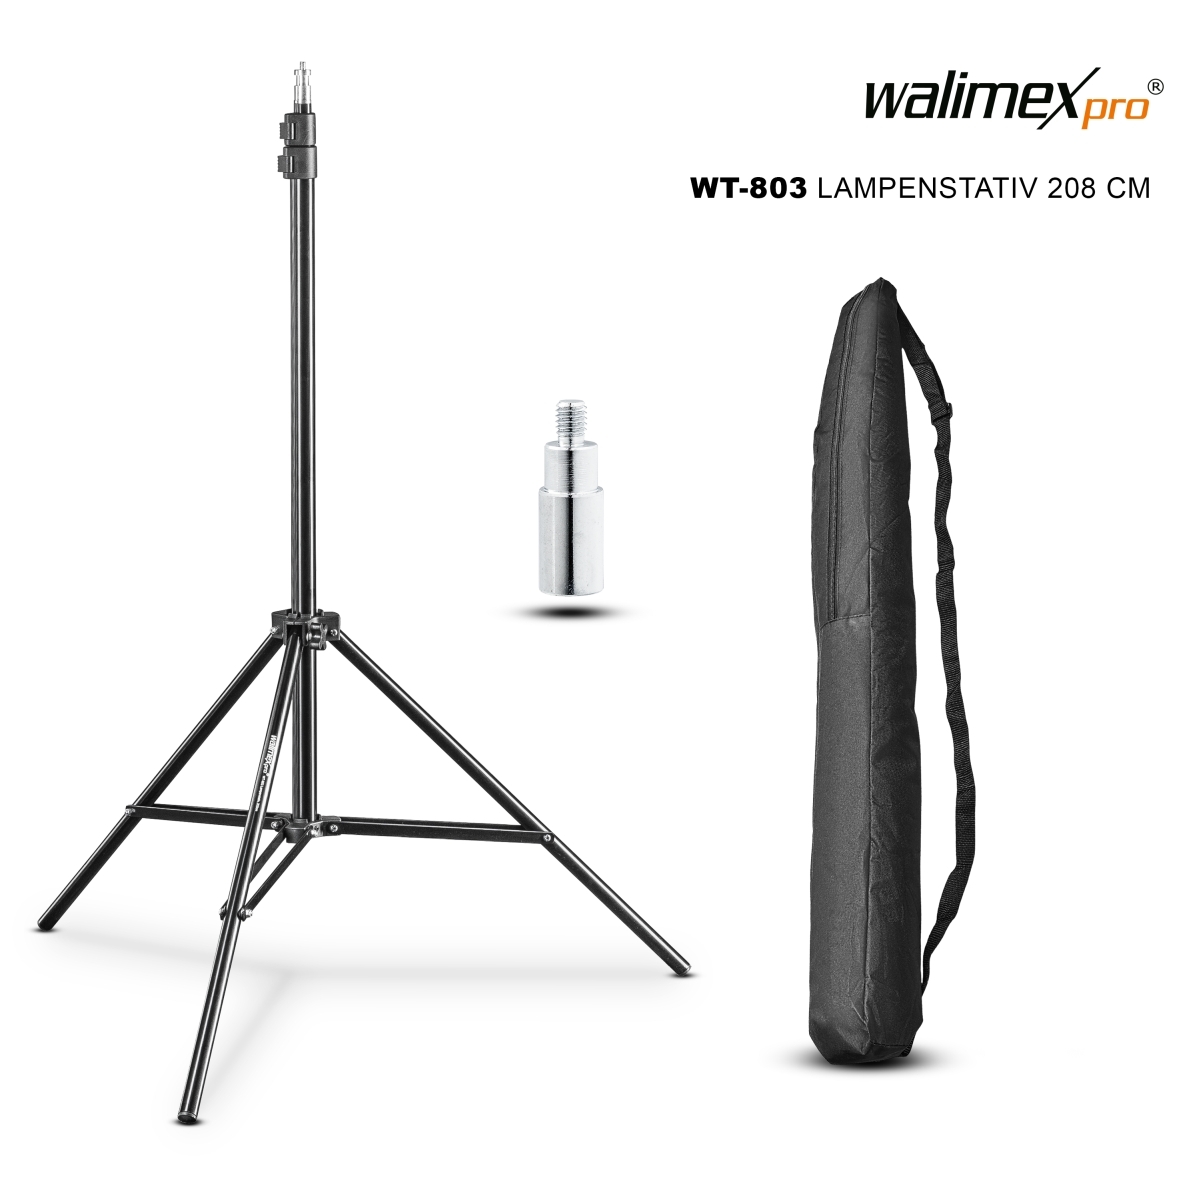 Walimex pro WT-803 Trépied pour lampe 208 cm avec sac et adaptateur 